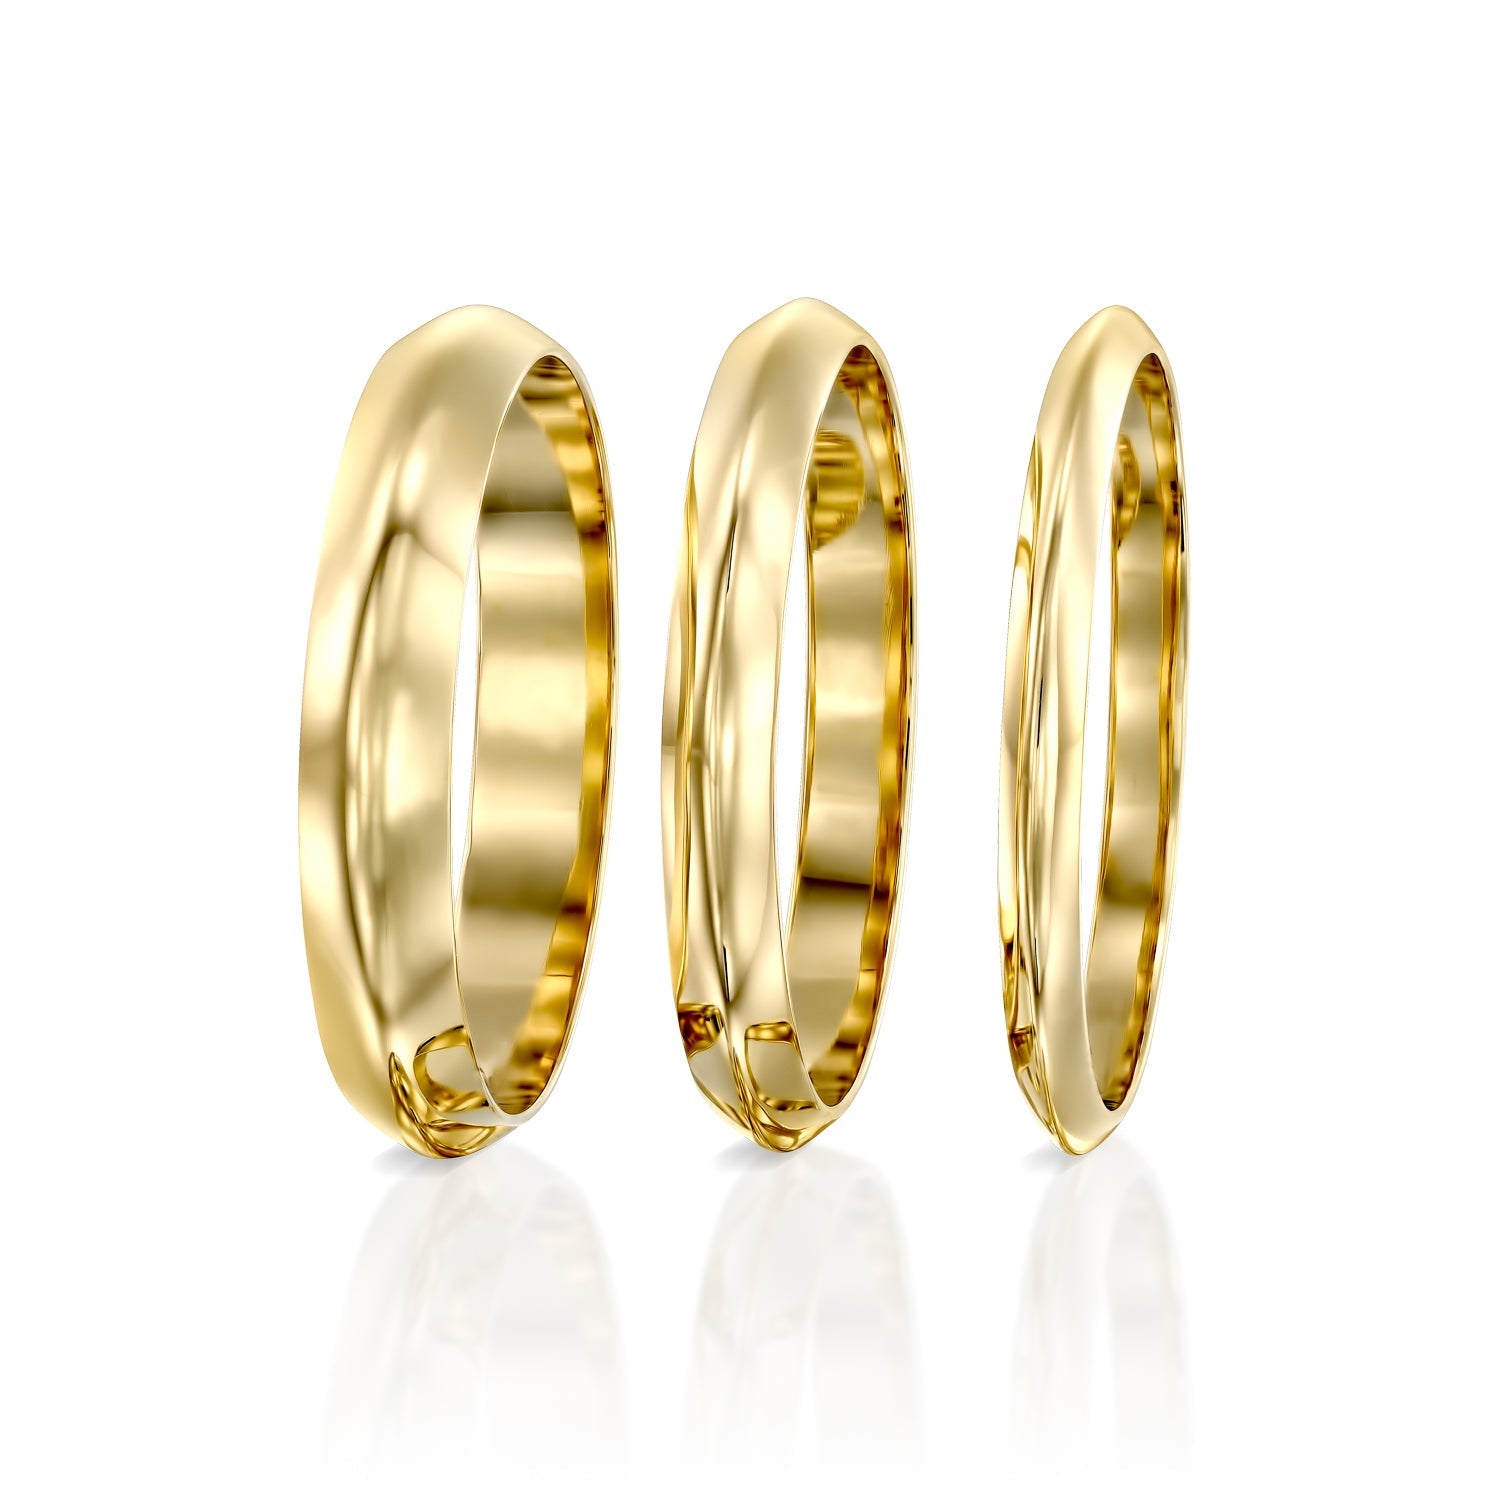 טבעת נישואים ג׳ודי - 3 מ״מ